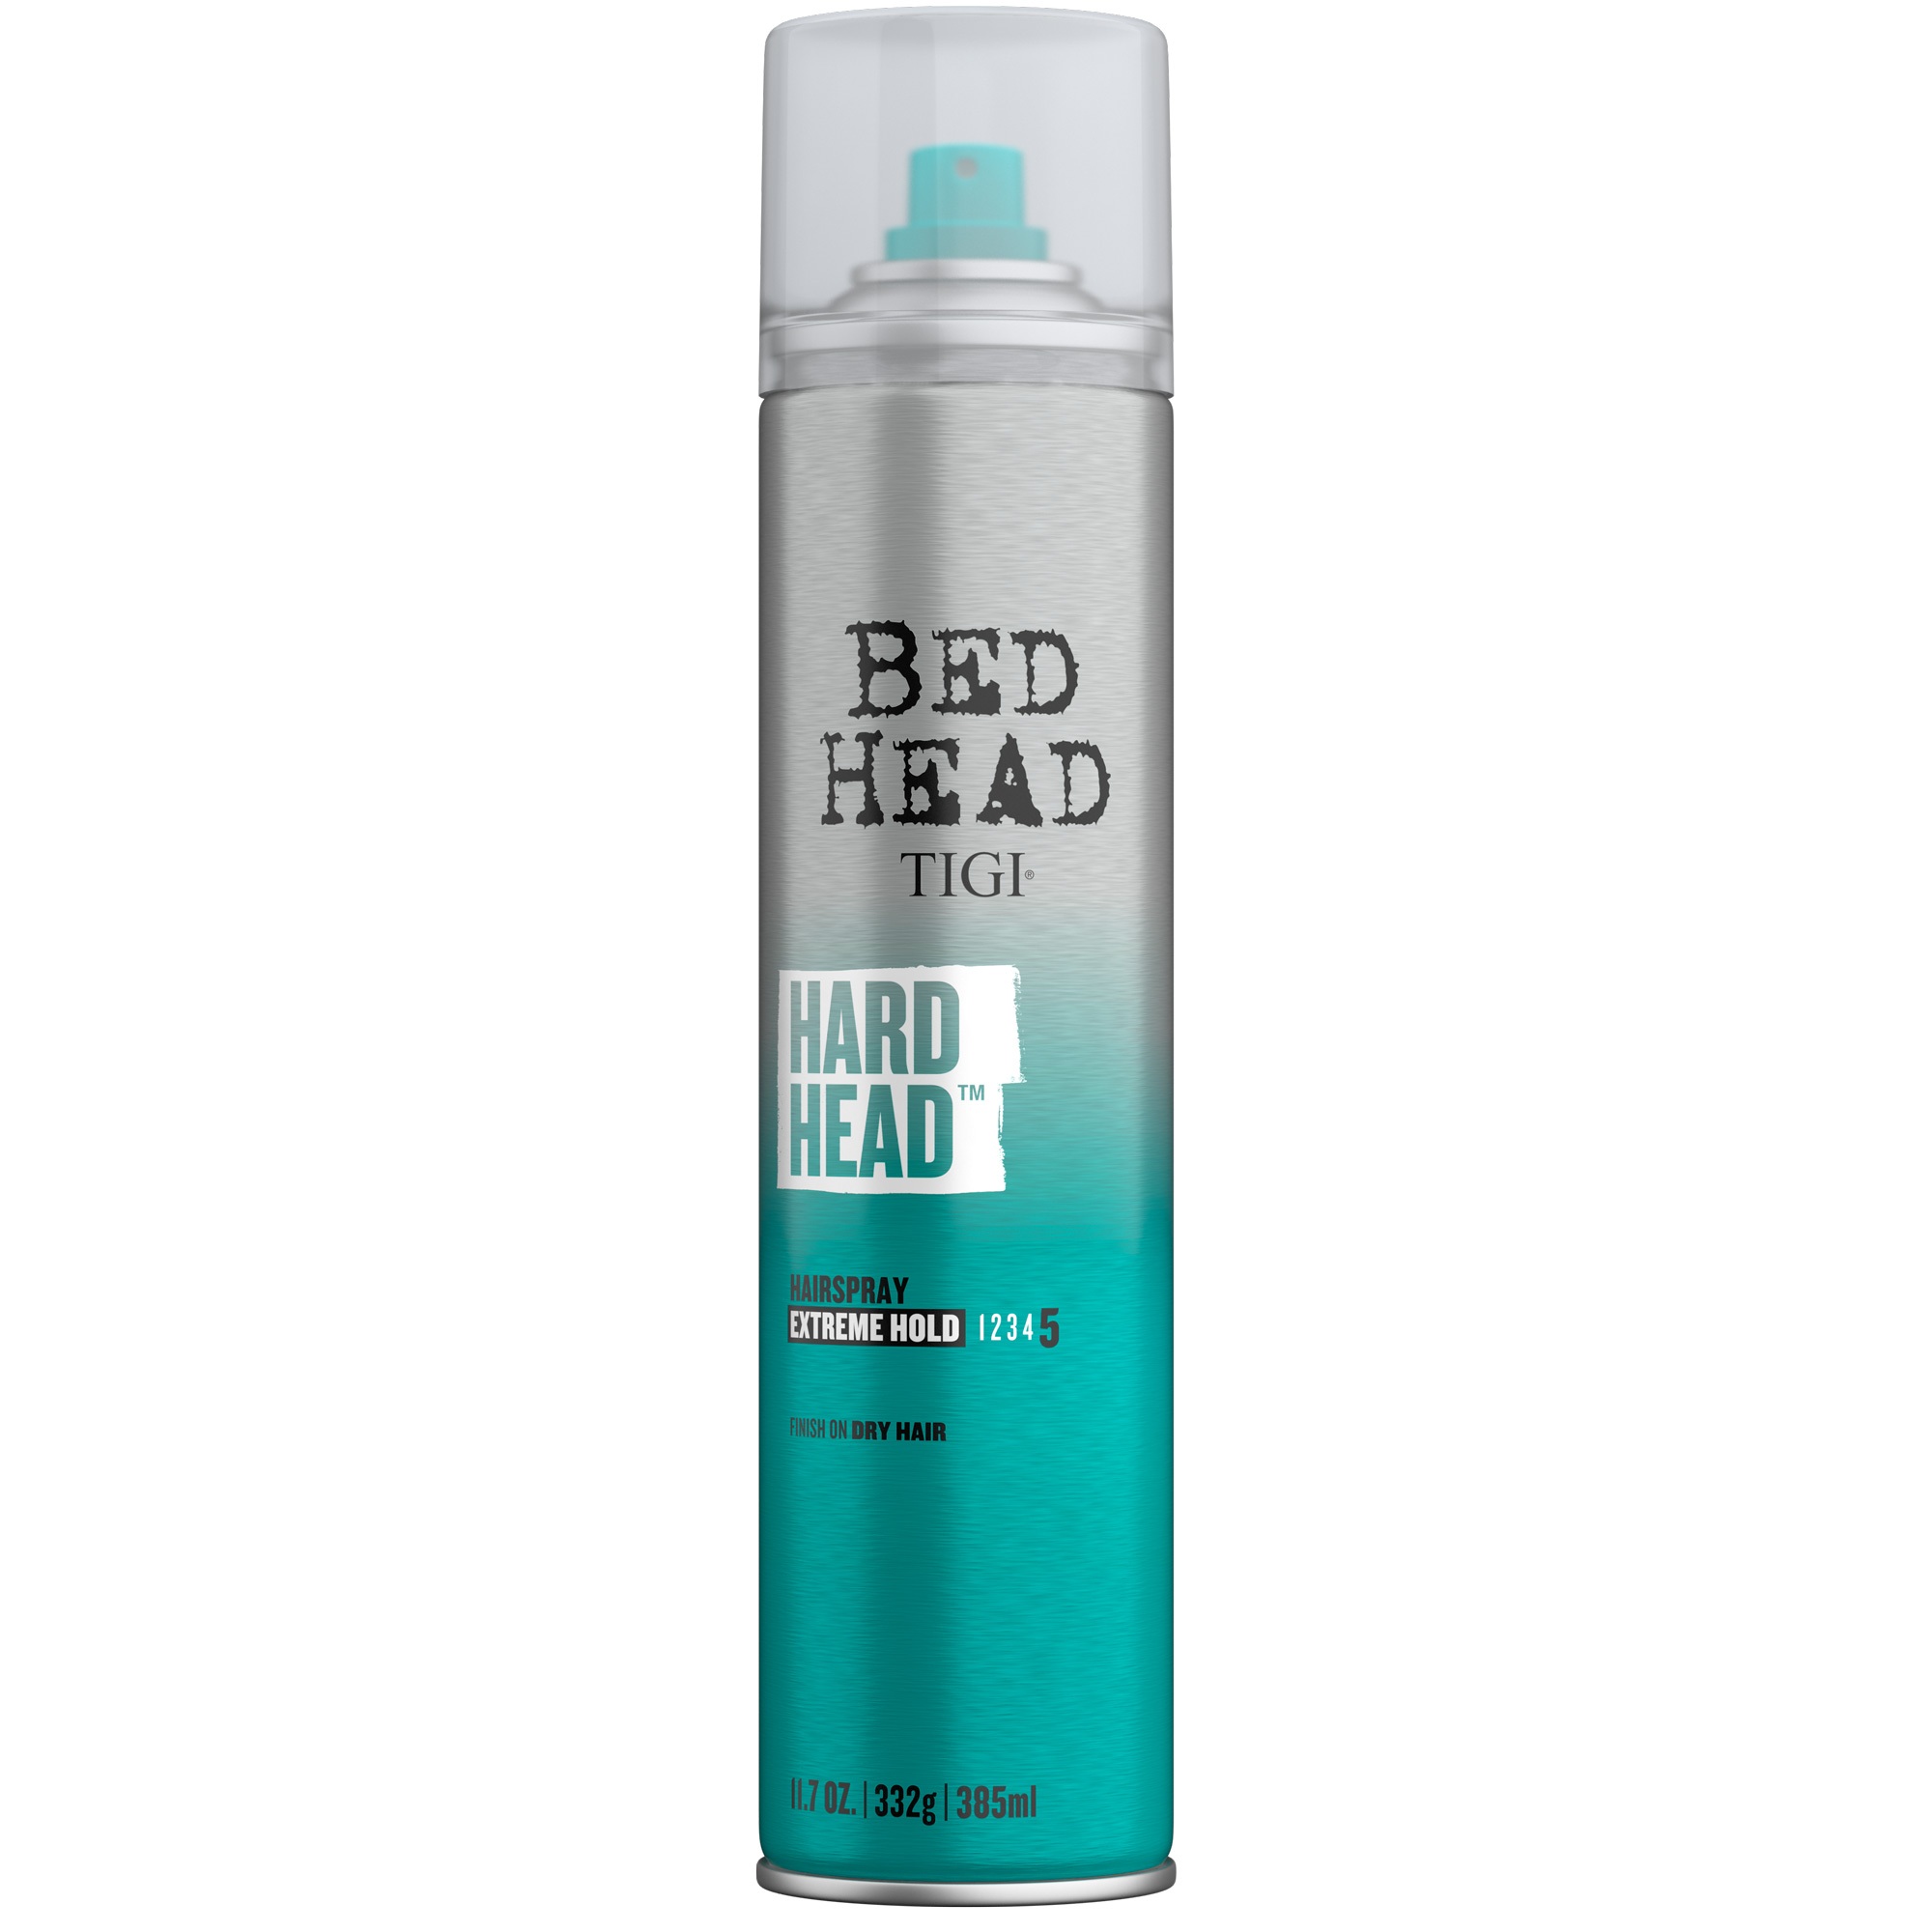 TIGI Bed Head: Hard Head Hairspray